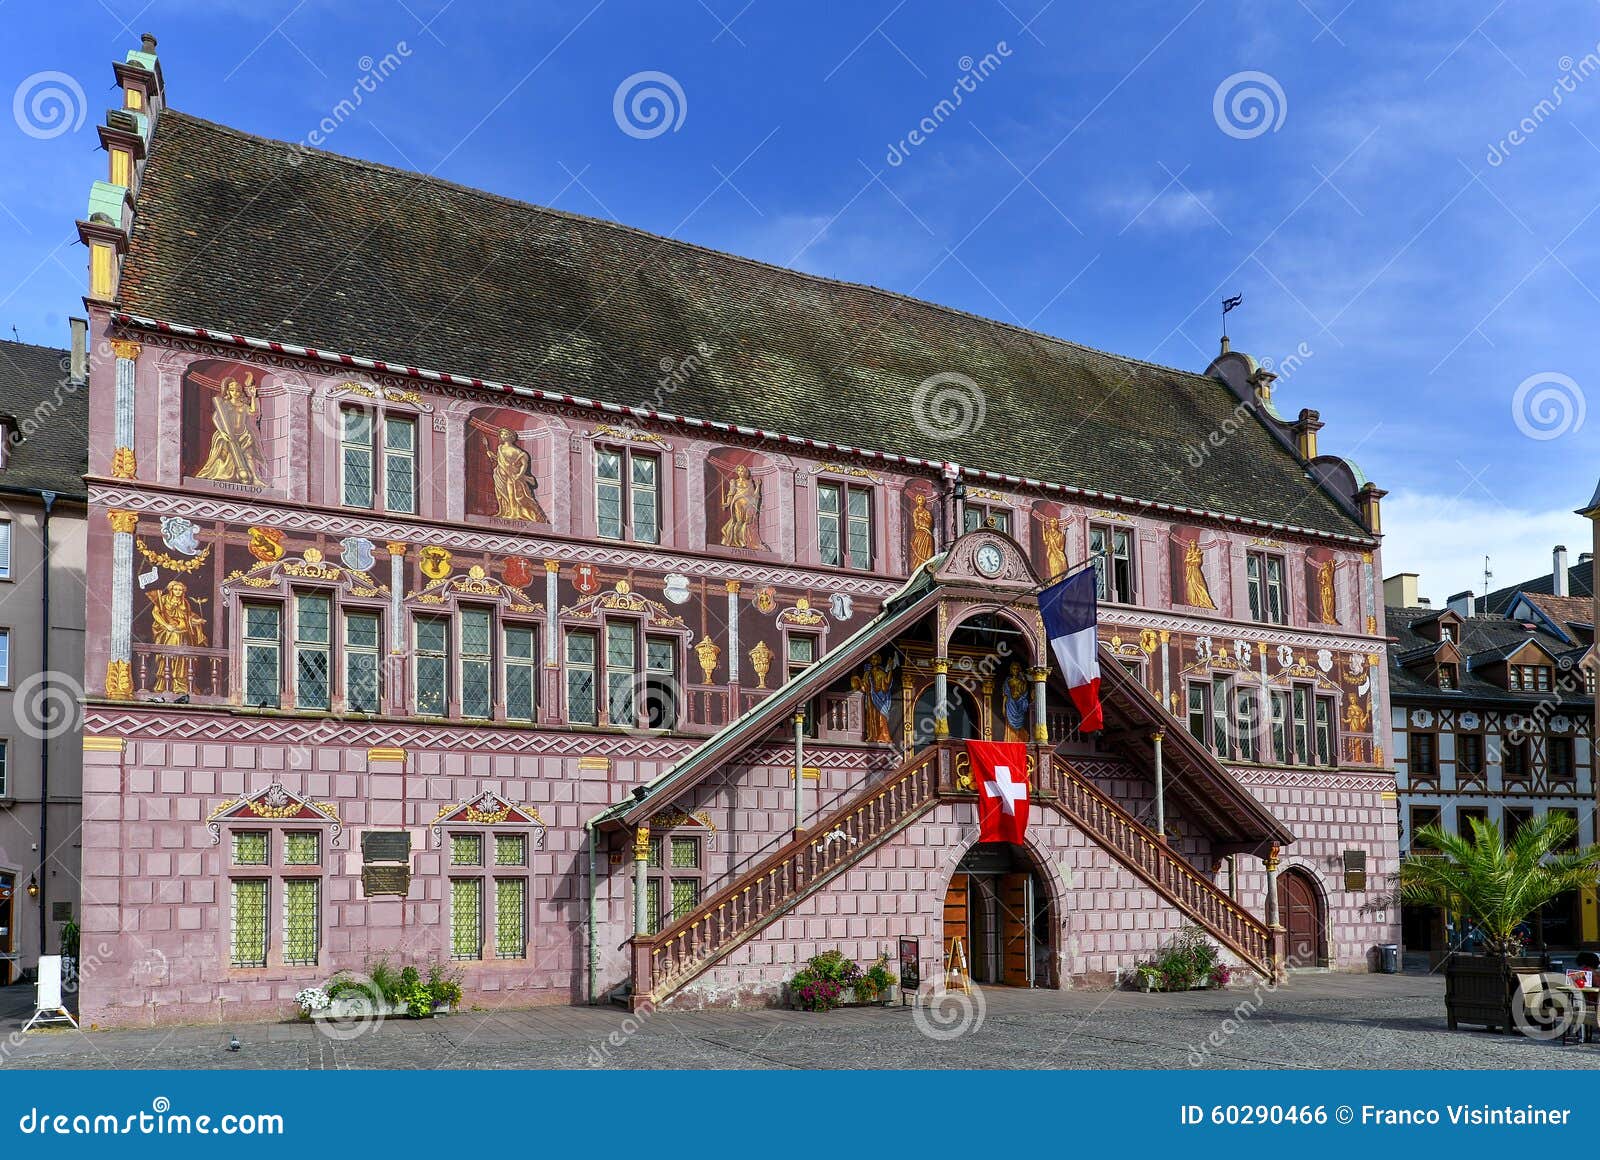 vecchio municipio in mulhouse - alsazia - francia